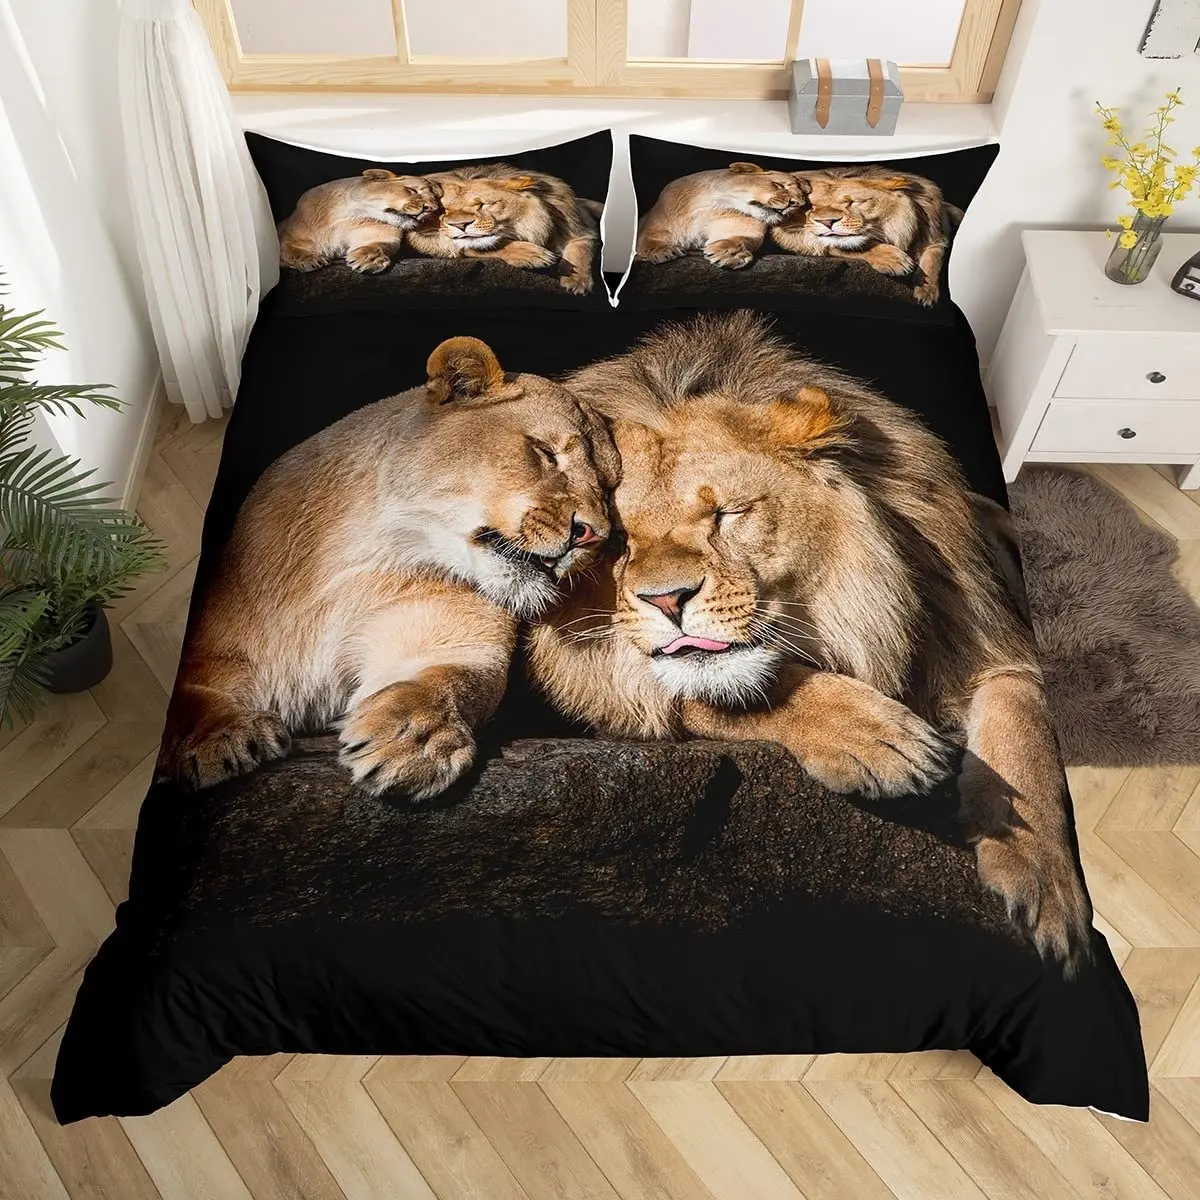 Lion Duvet Cover Set Wild Lion Couple Print Bedding Set 3pcs for Kids Boys Teens 3D Comforter Cover Set